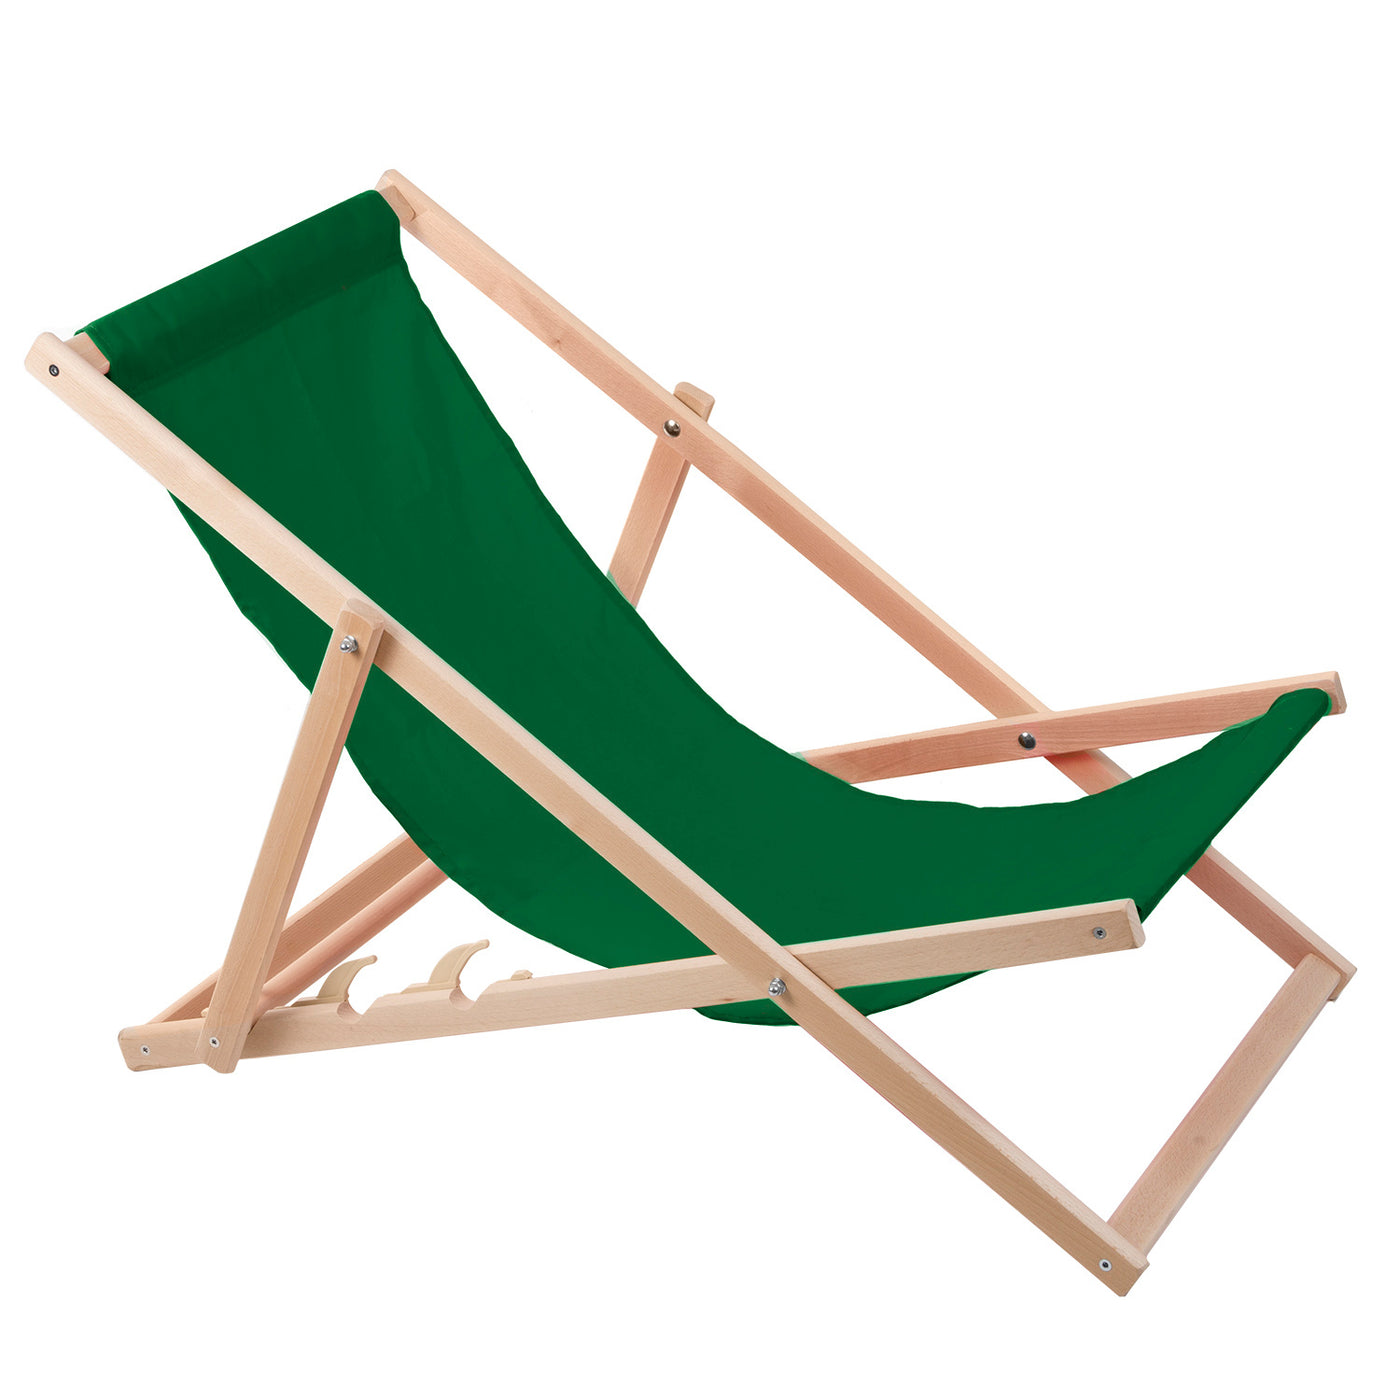 Leżak z drewna bukowego Woodok, zielony, idealne na plażę, balkon, taras